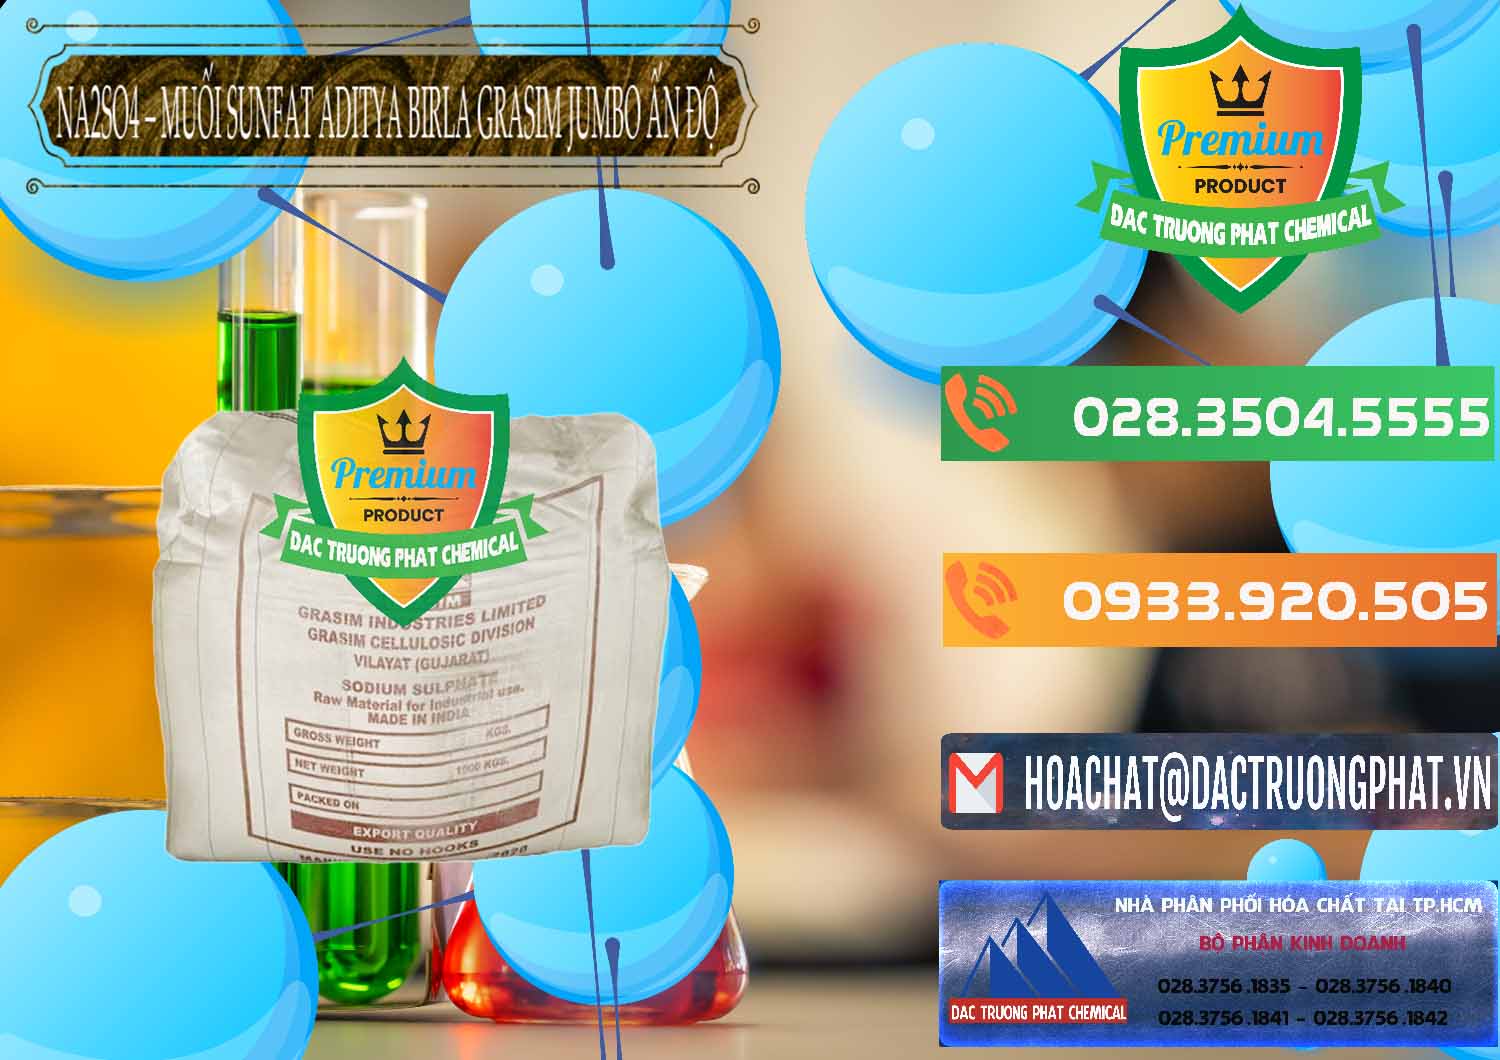 Nhà nhập khẩu _ bán Sodium Sulphate - Muối Sunfat Na2SO4 Jumbo Bành Aditya Birla Grasim Ấn Độ India - 0357 - Chuyên phân phối _ kinh doanh hóa chất tại TP.HCM - hoachatxulynuoc.com.vn